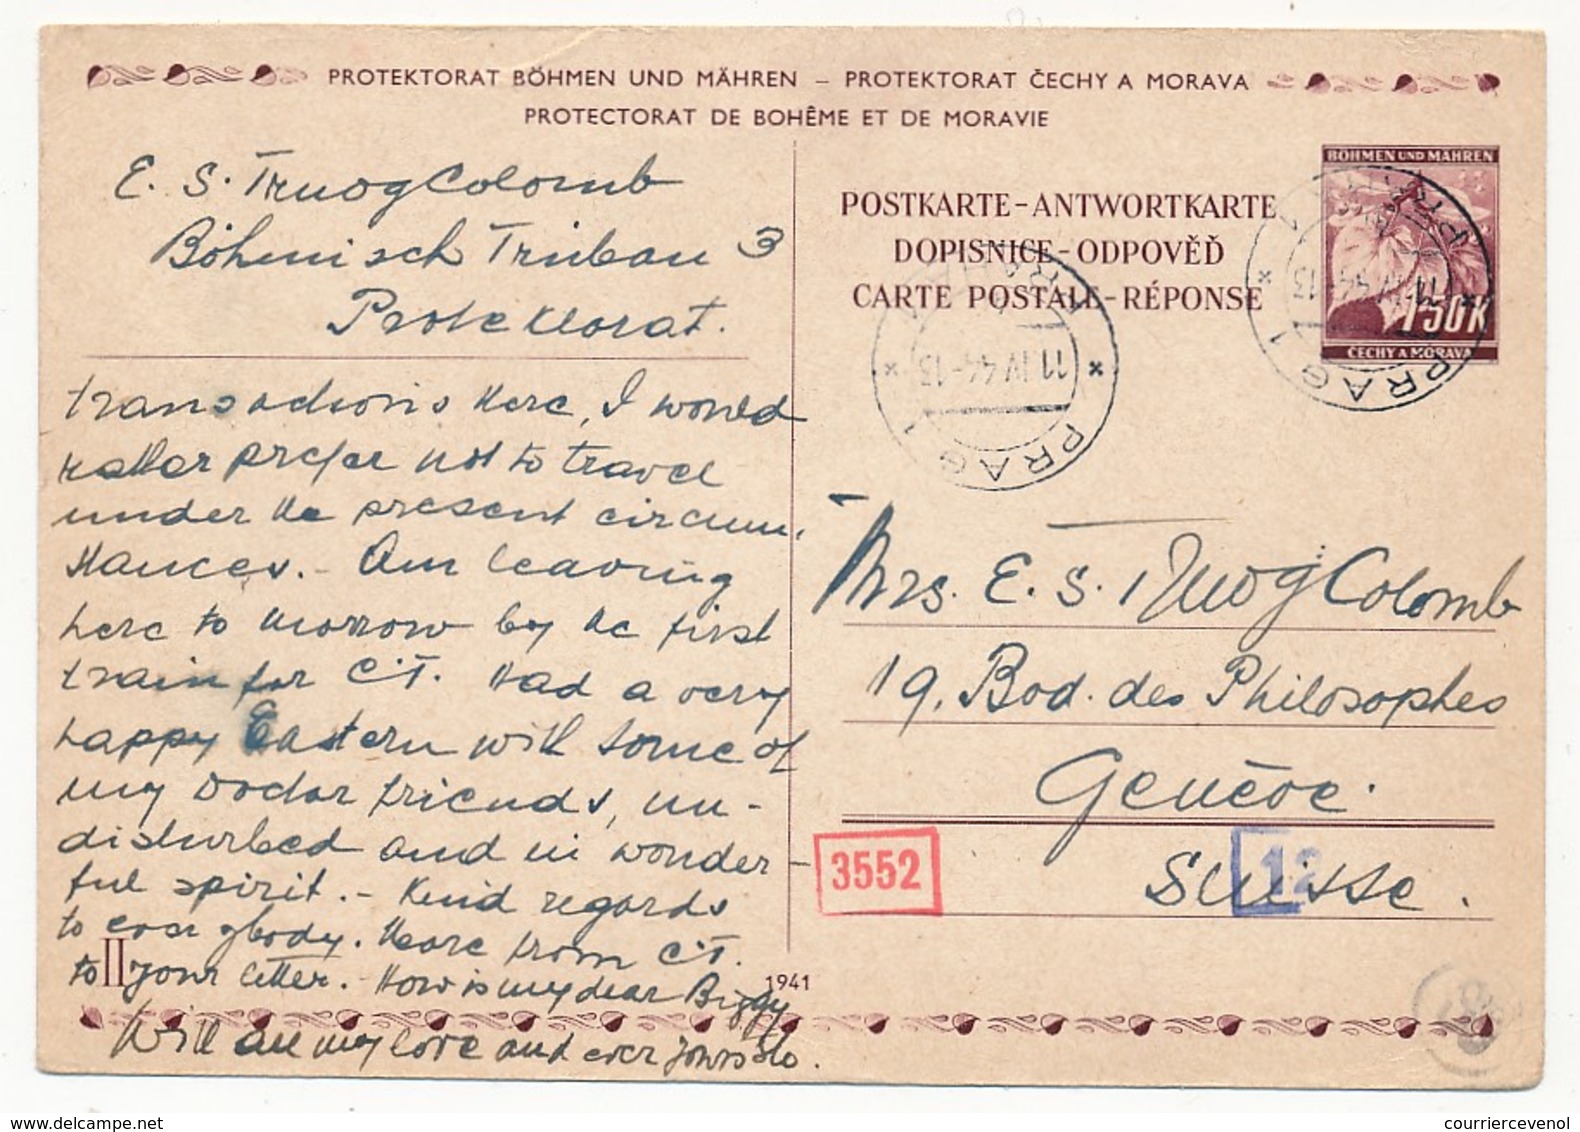 4 cartes (entiers postaux) depuis Böhmisch-Trübau et Prague (1944/1945) - Censures allemandes